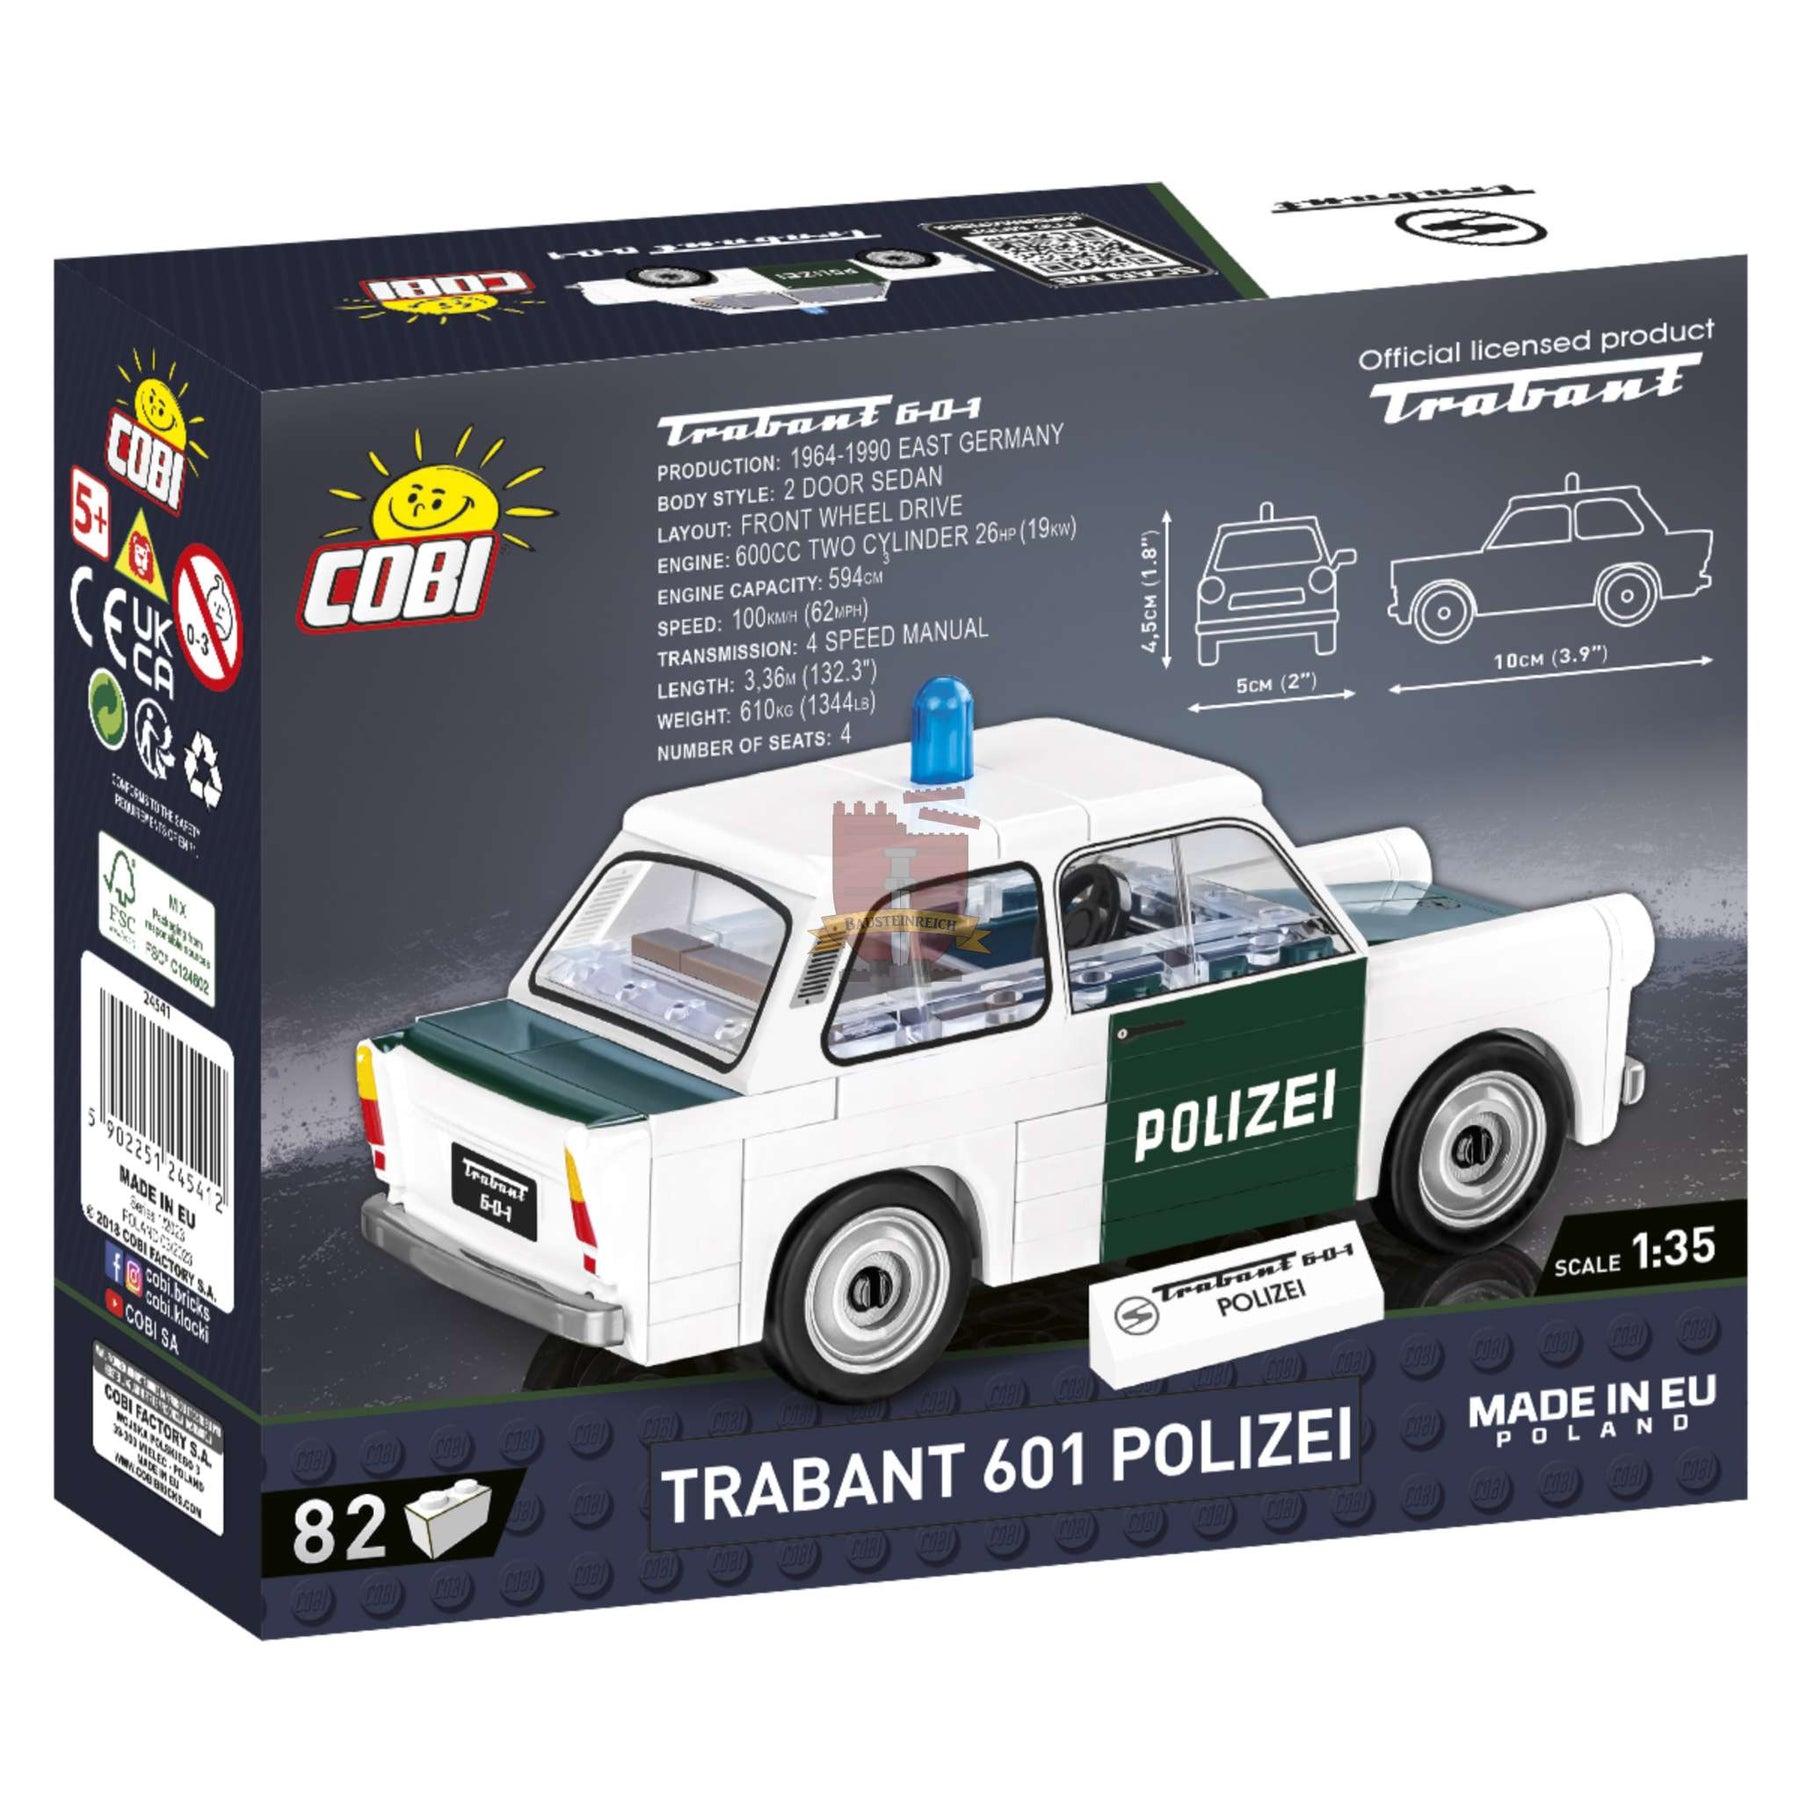 24541-Trabant 601 Polizei (Cobi)